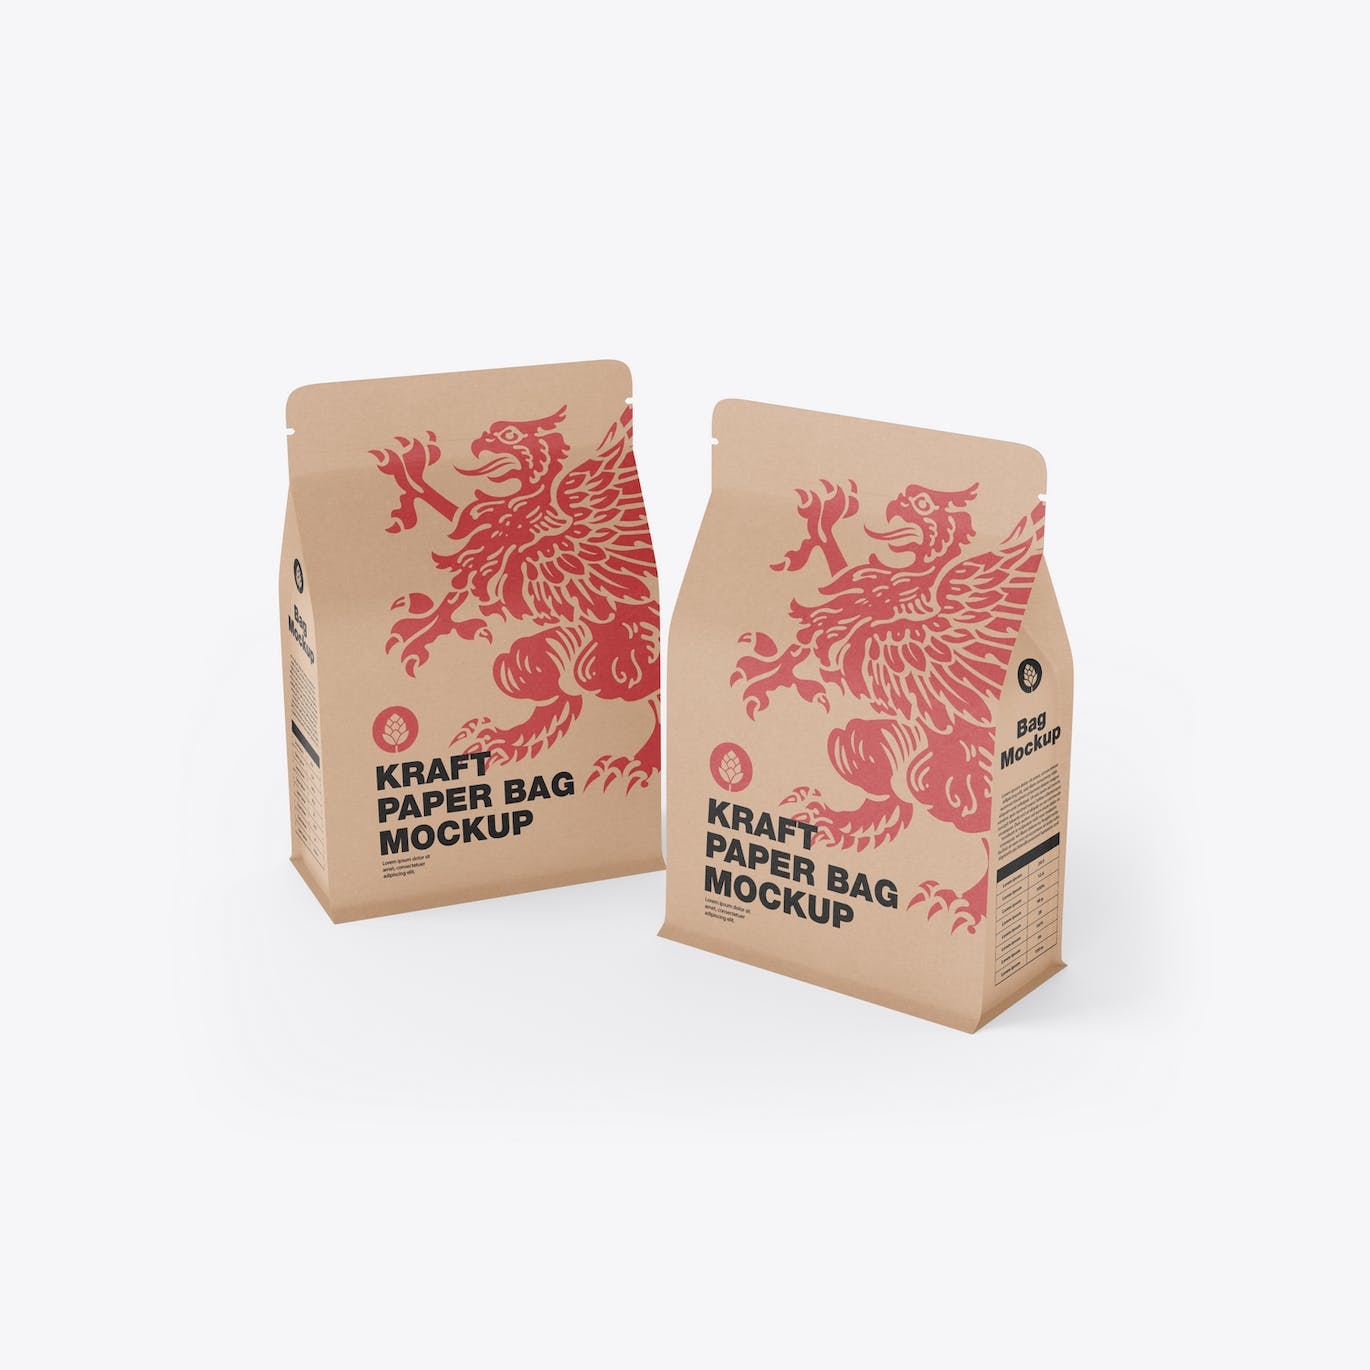 纸质牛皮纸食品袋包装设计样机 Paper Food Bag Mockup 样机素材 第4张